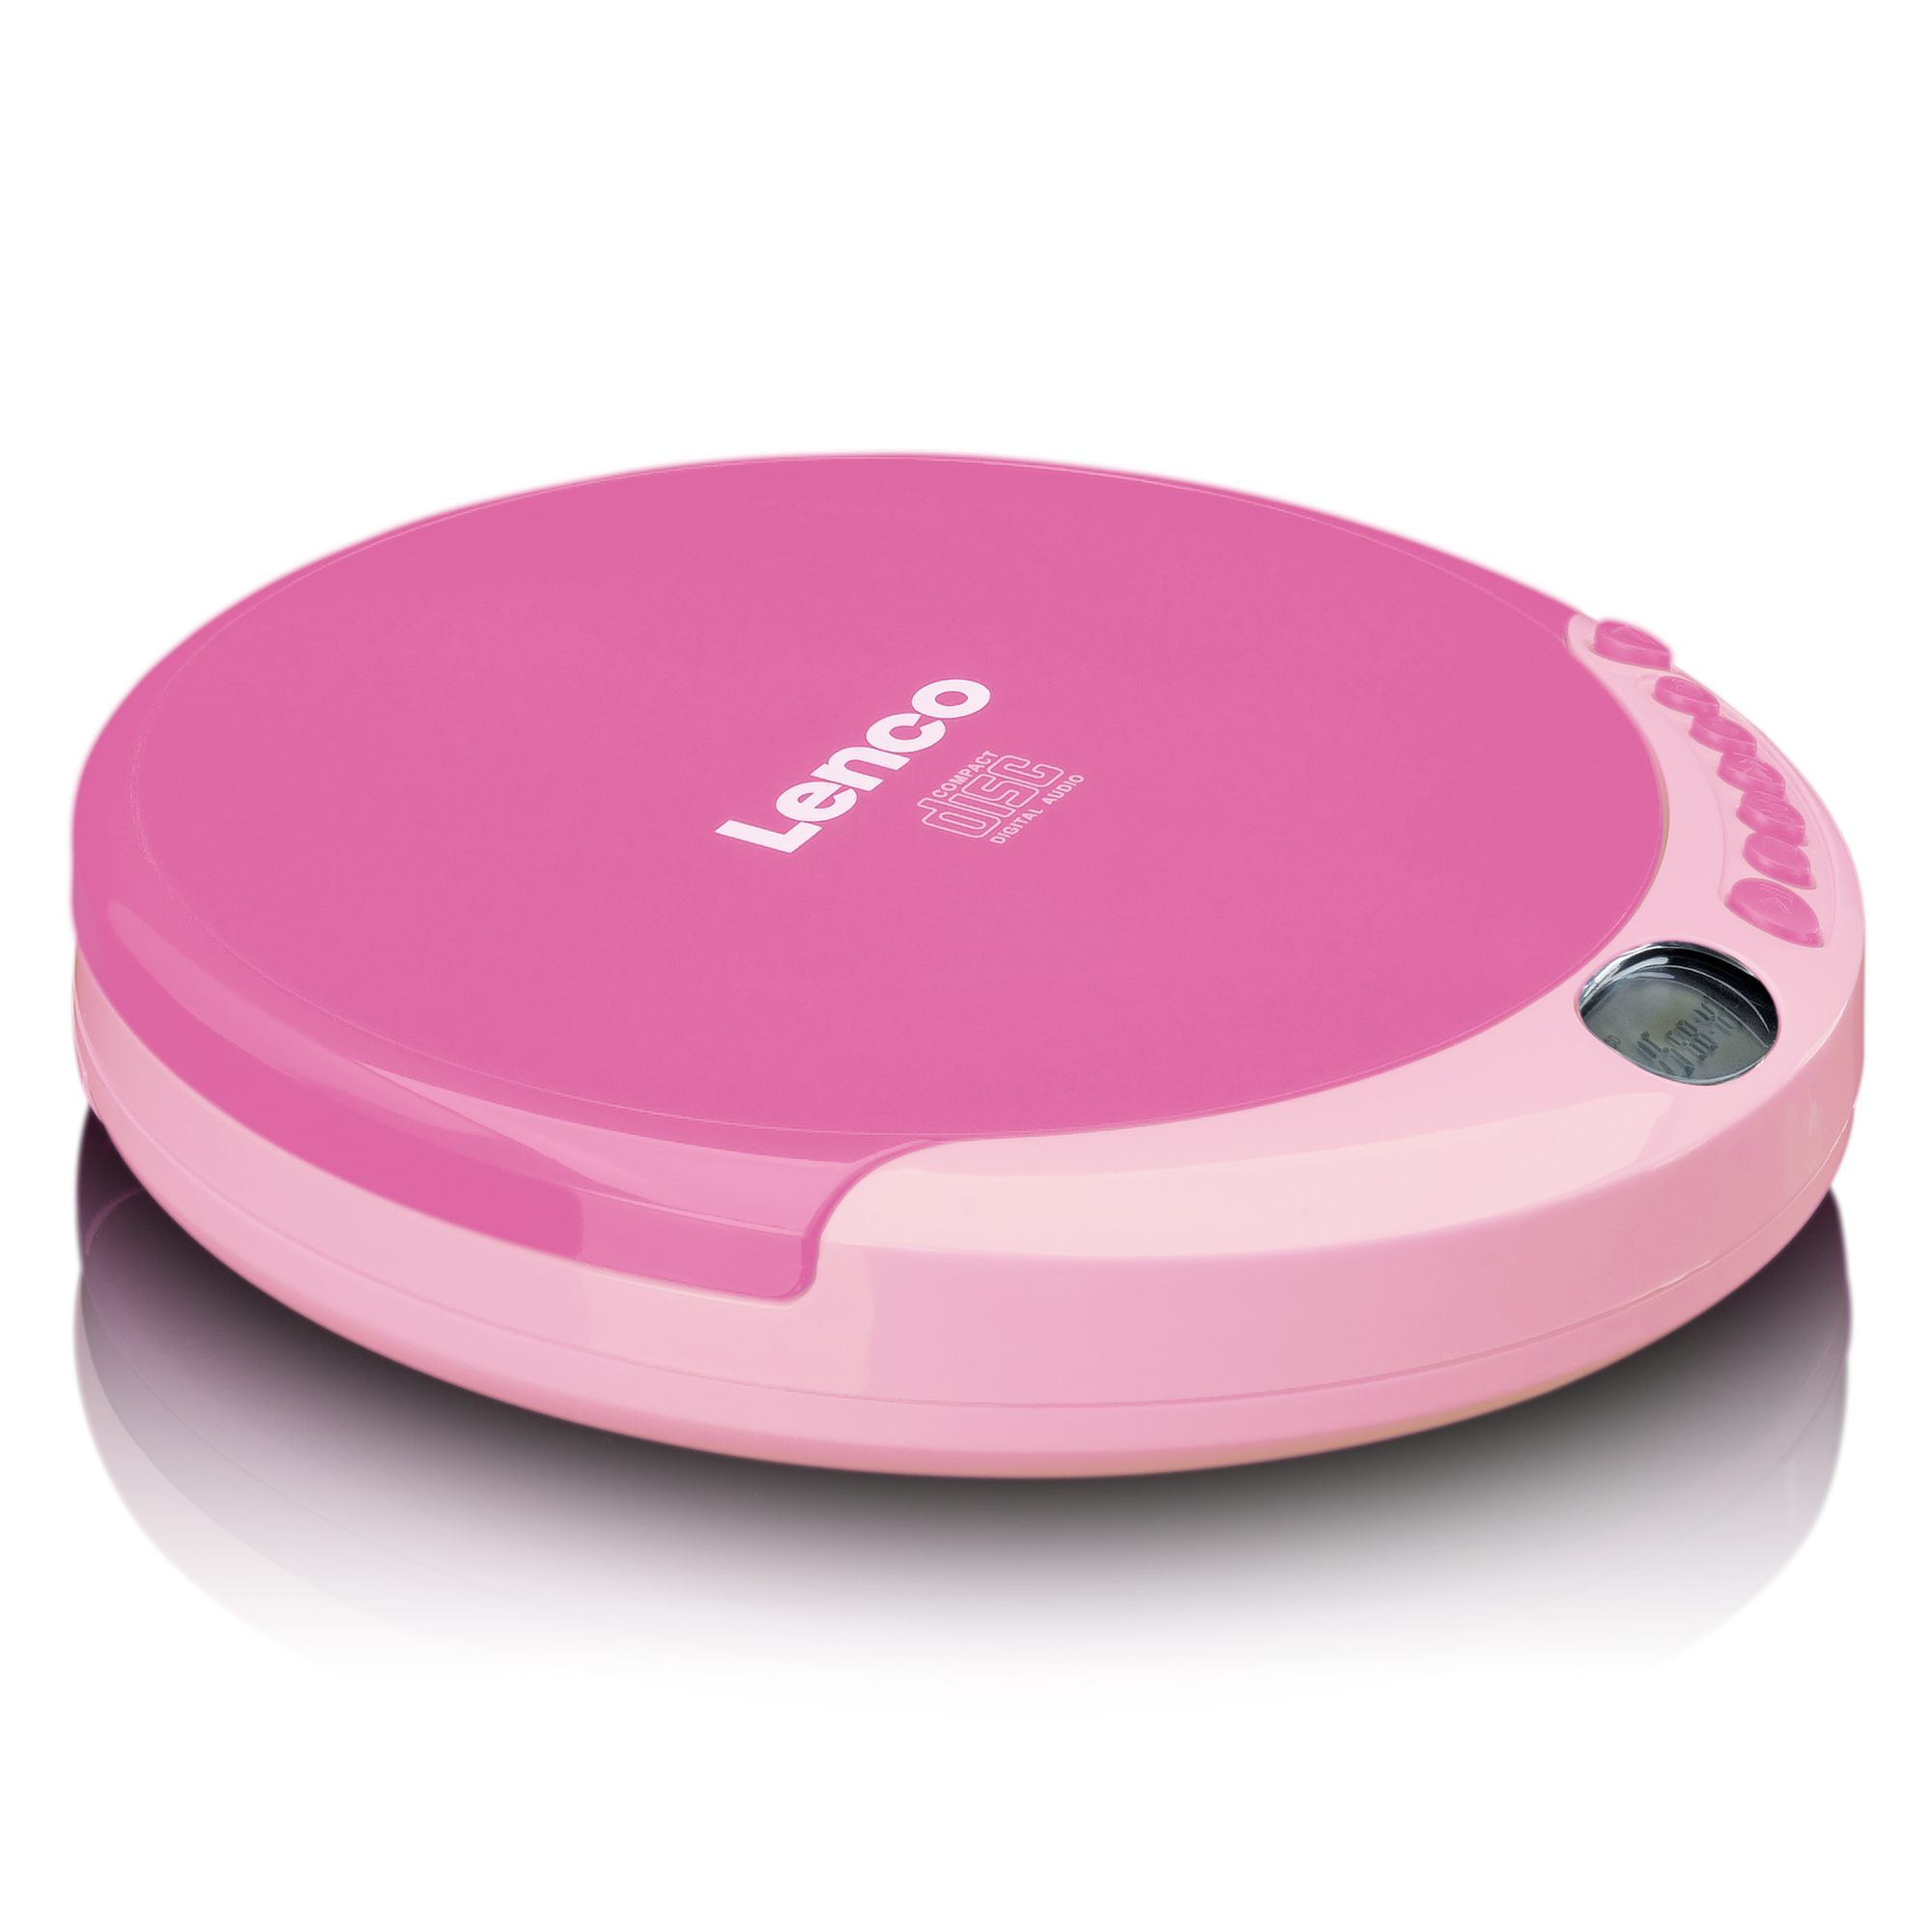 LENCO CD-011PK CD-Spieler Pink